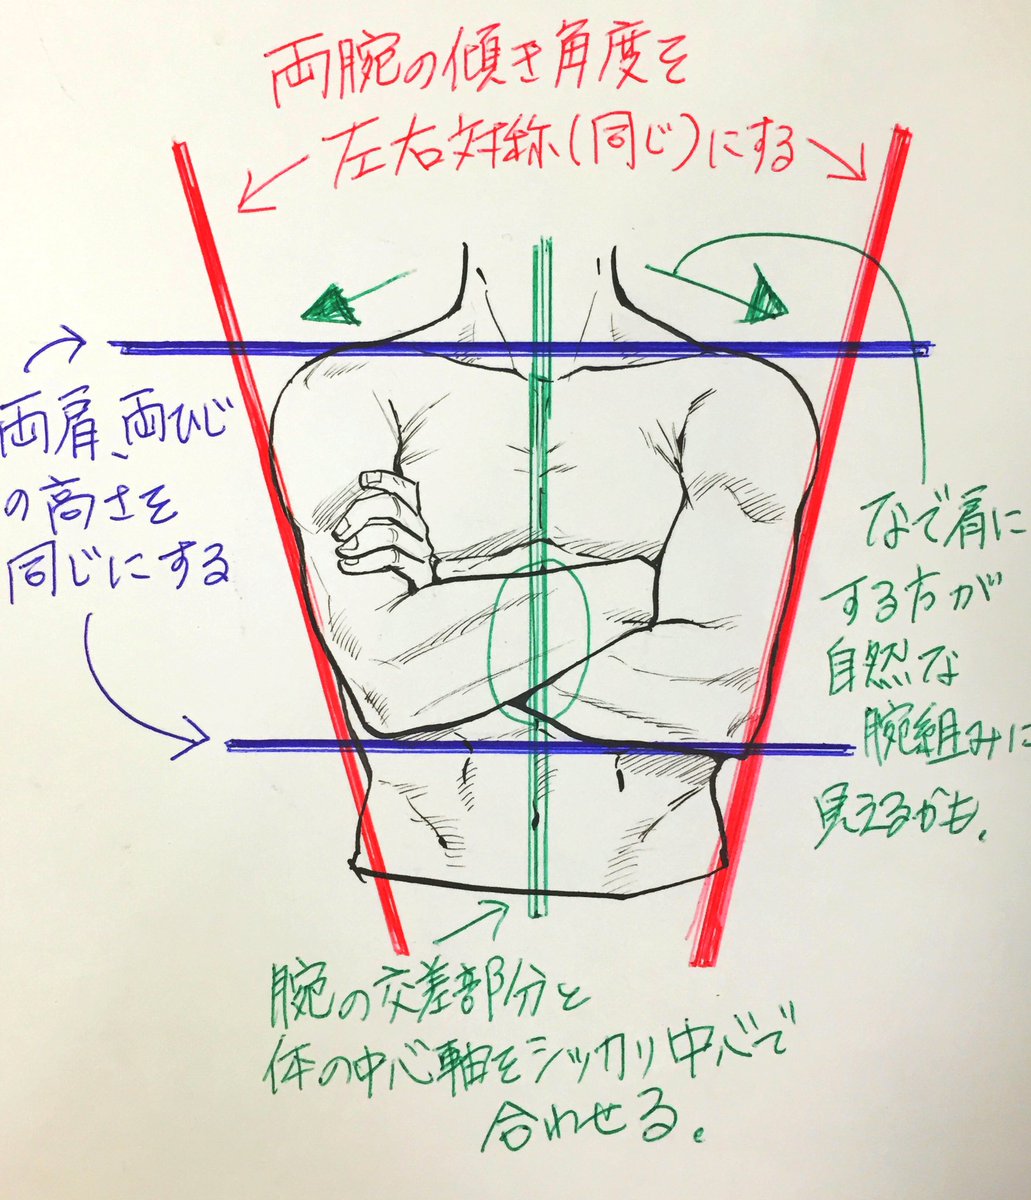 吉村拓也 イラスト講座 腕組みポーズ の描き方 腕組み苦手な人ぜひ見てね コレは 前編